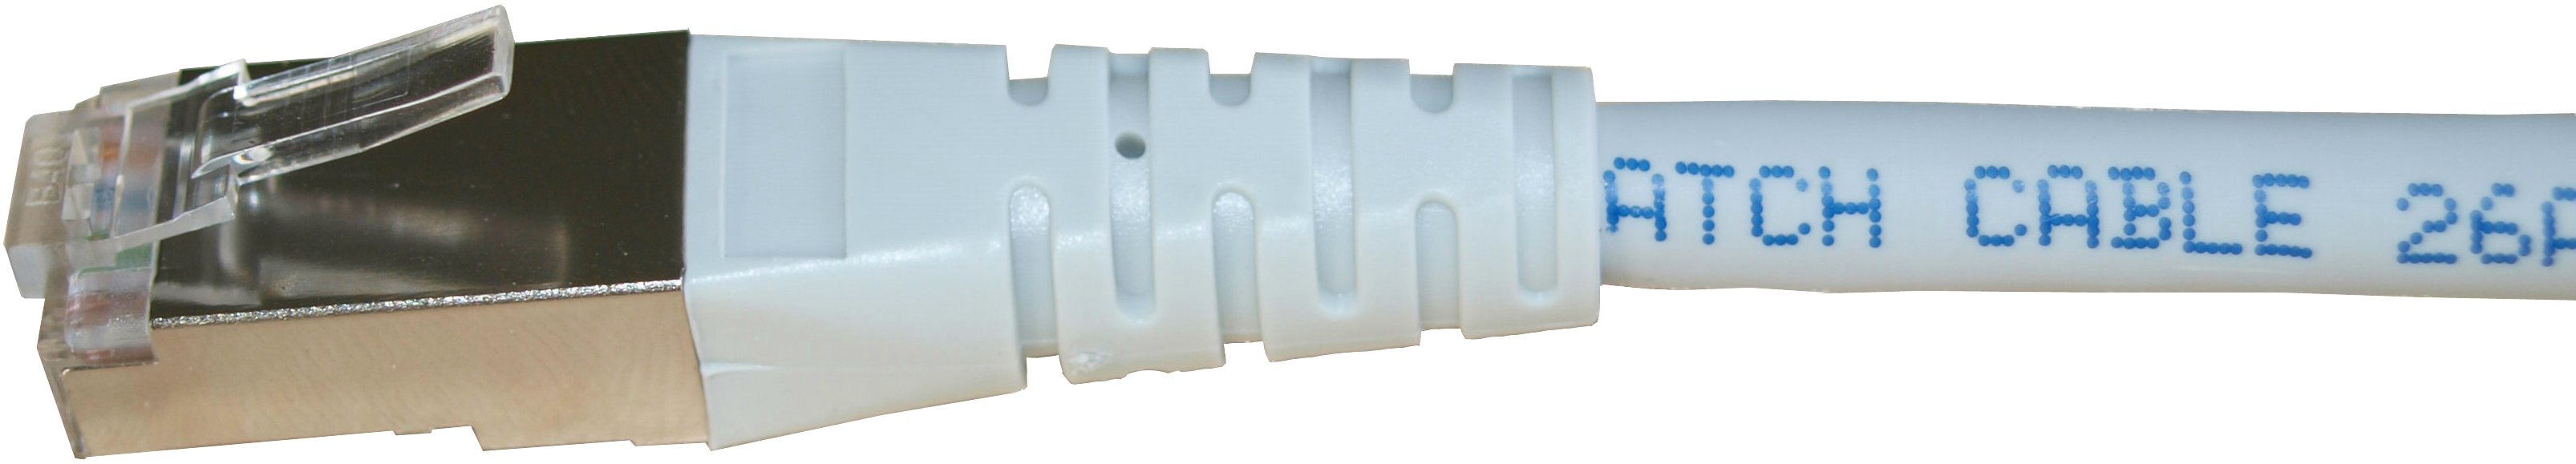 Kupferpatchkabel Cat.6 250MHz 1,0m weiß